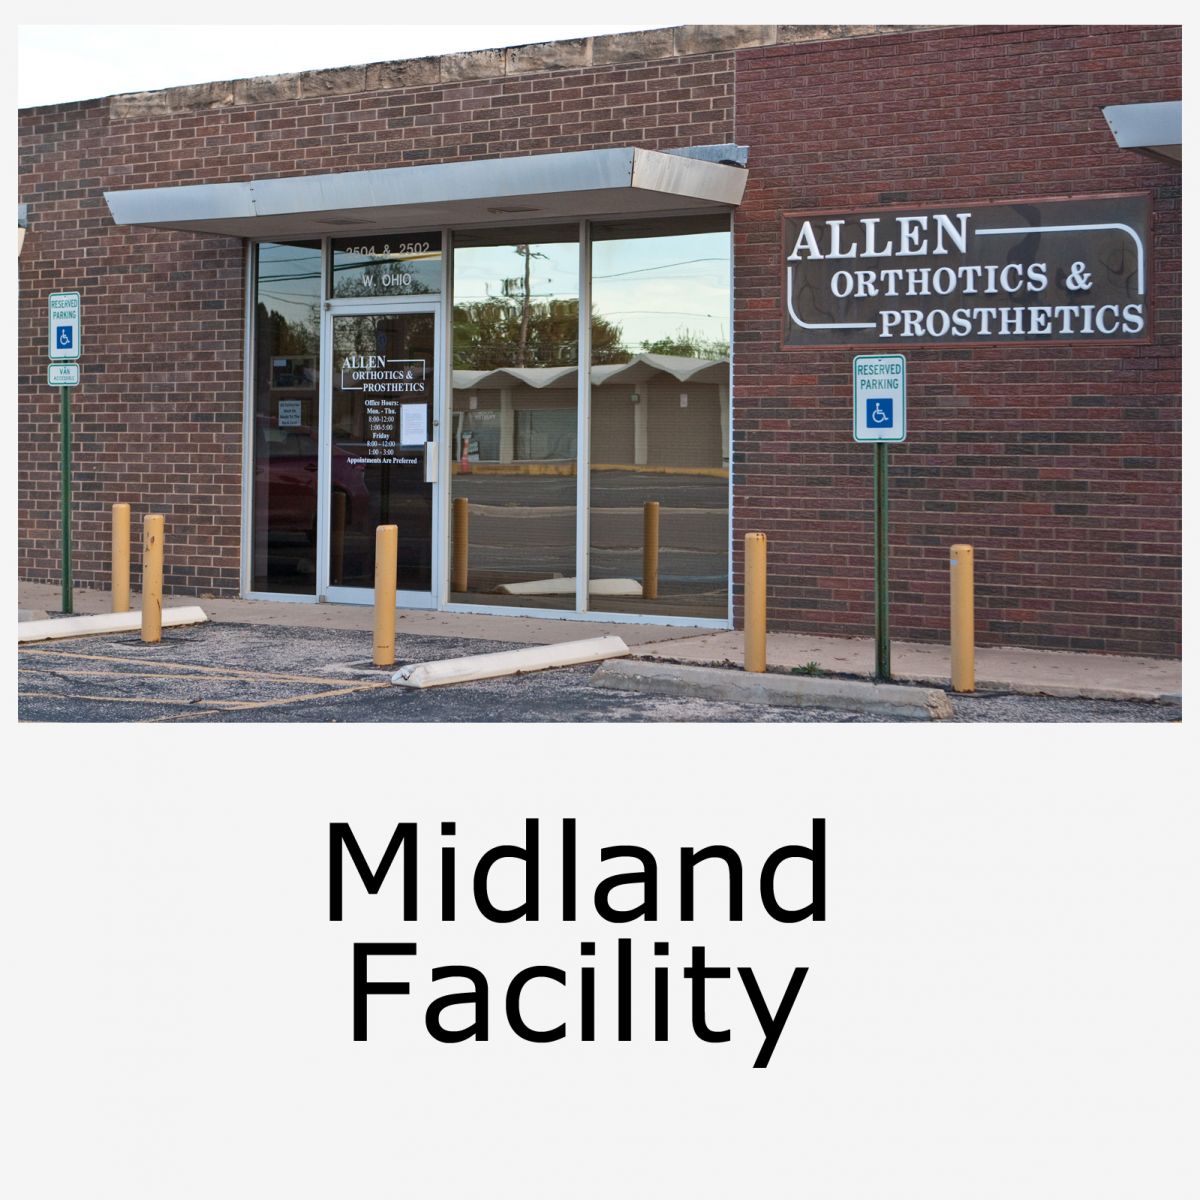 images/Employees & Facility/Midland 2.jpg